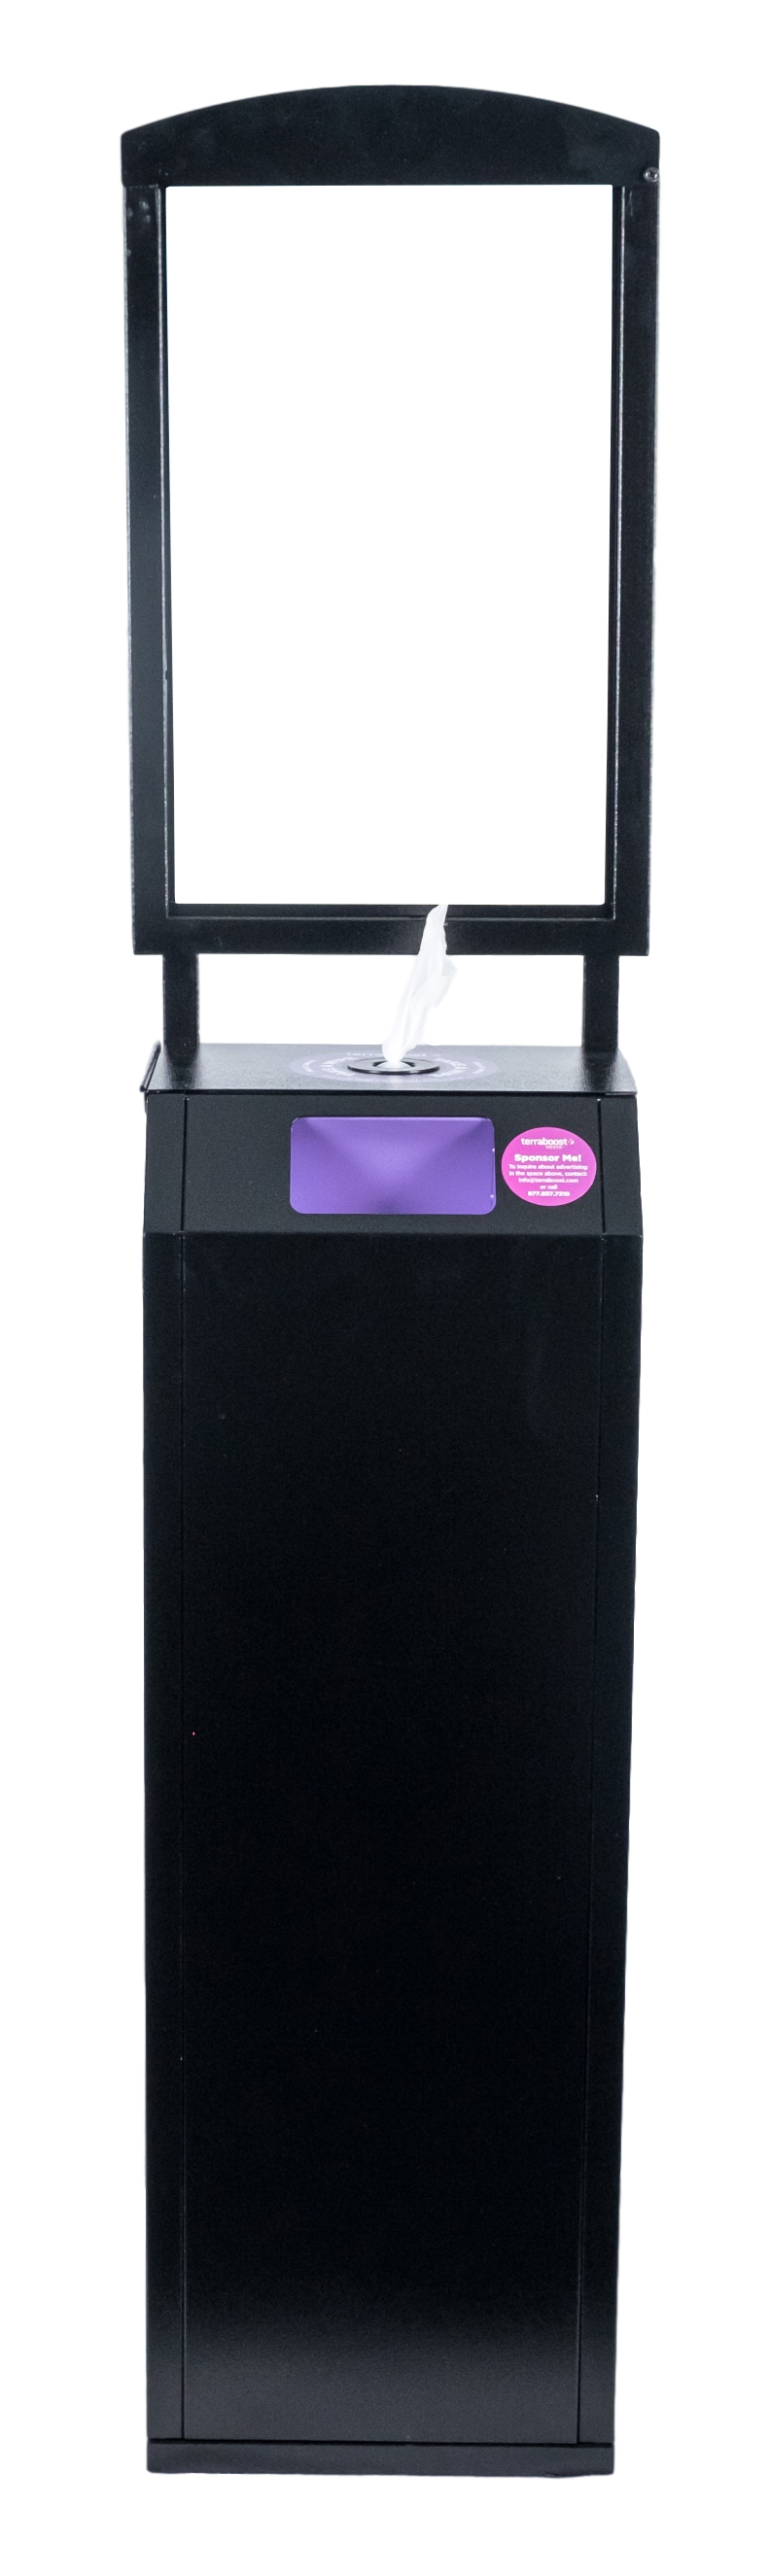 Premium Hand Sanitizer Wipe Dispenser by Terraboost